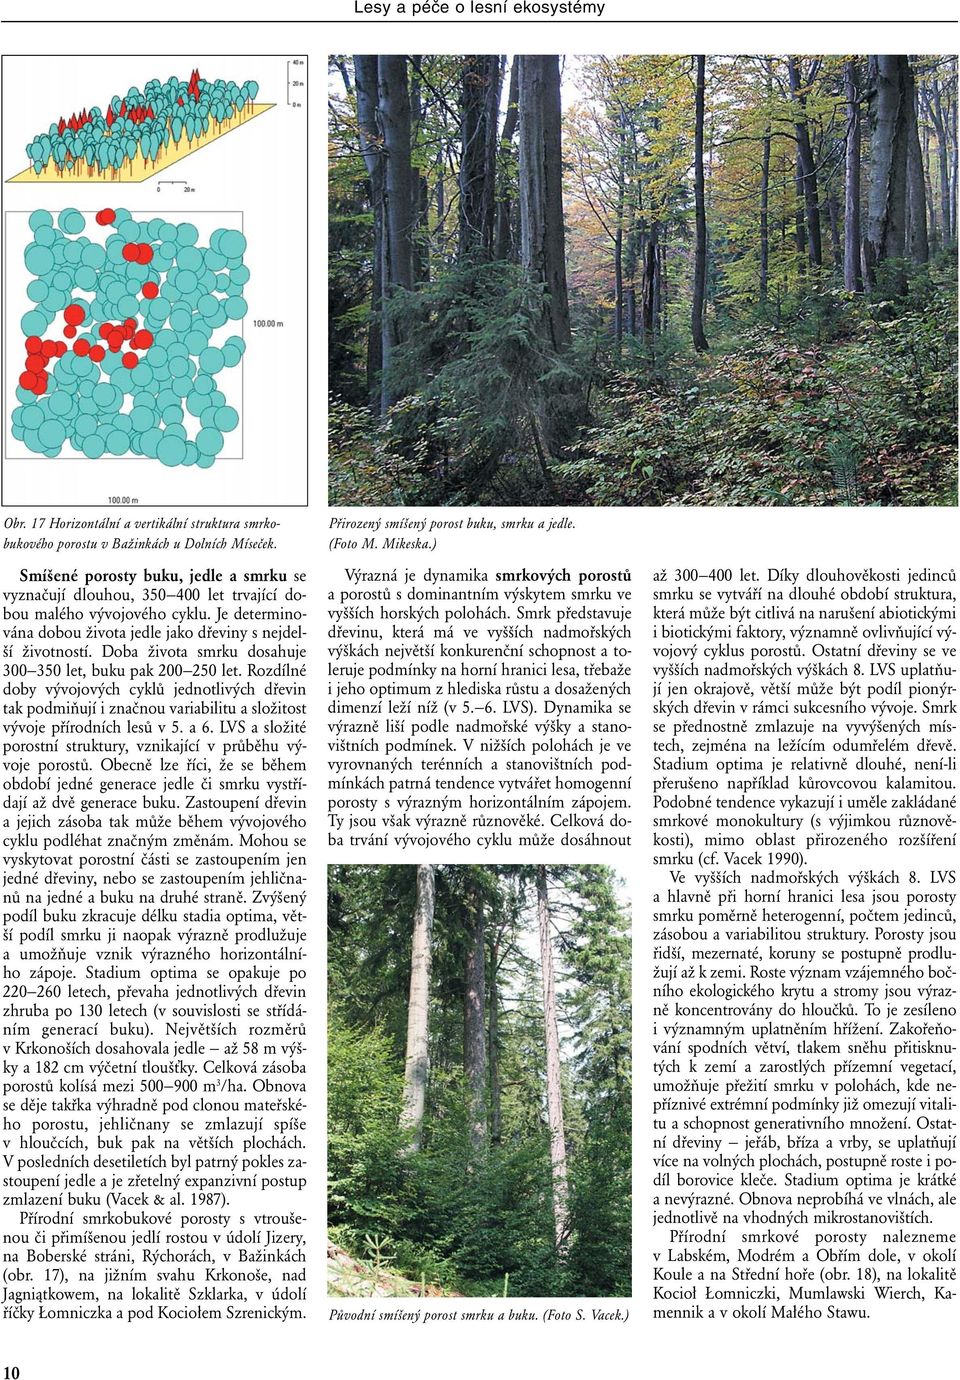 Doba života smrku dosahuje 300 350 let, buku pak 200 250 let. Rozdílné doby vývojových cyklů jednotlivých dřevin tak podmiňují i značnou variabilitu a složitost vývoje přírodních lesů v 5. a 6.